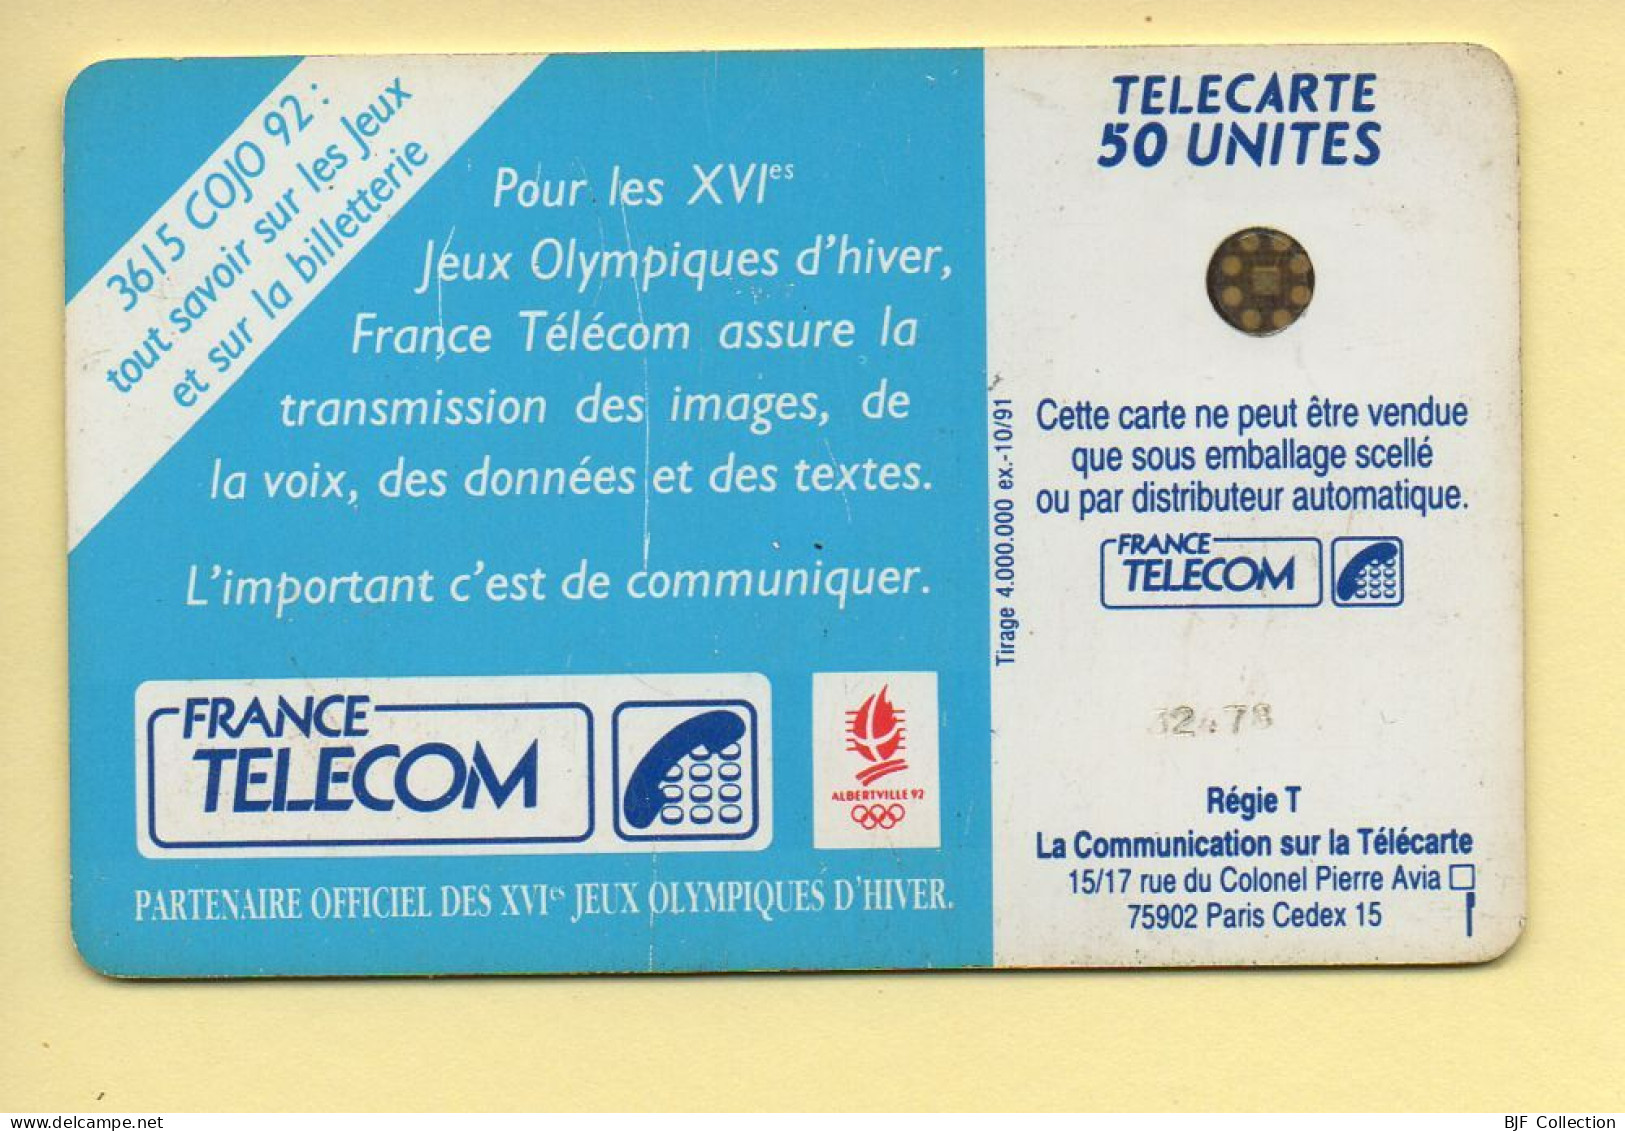 Télécarte 1991 : JOUEUR DE HOCKEY / 50 Unités / Numéro 32478 / 10-91 / Jeux Olympiques D'Hiver ALBERTVILLE 92 - 1991